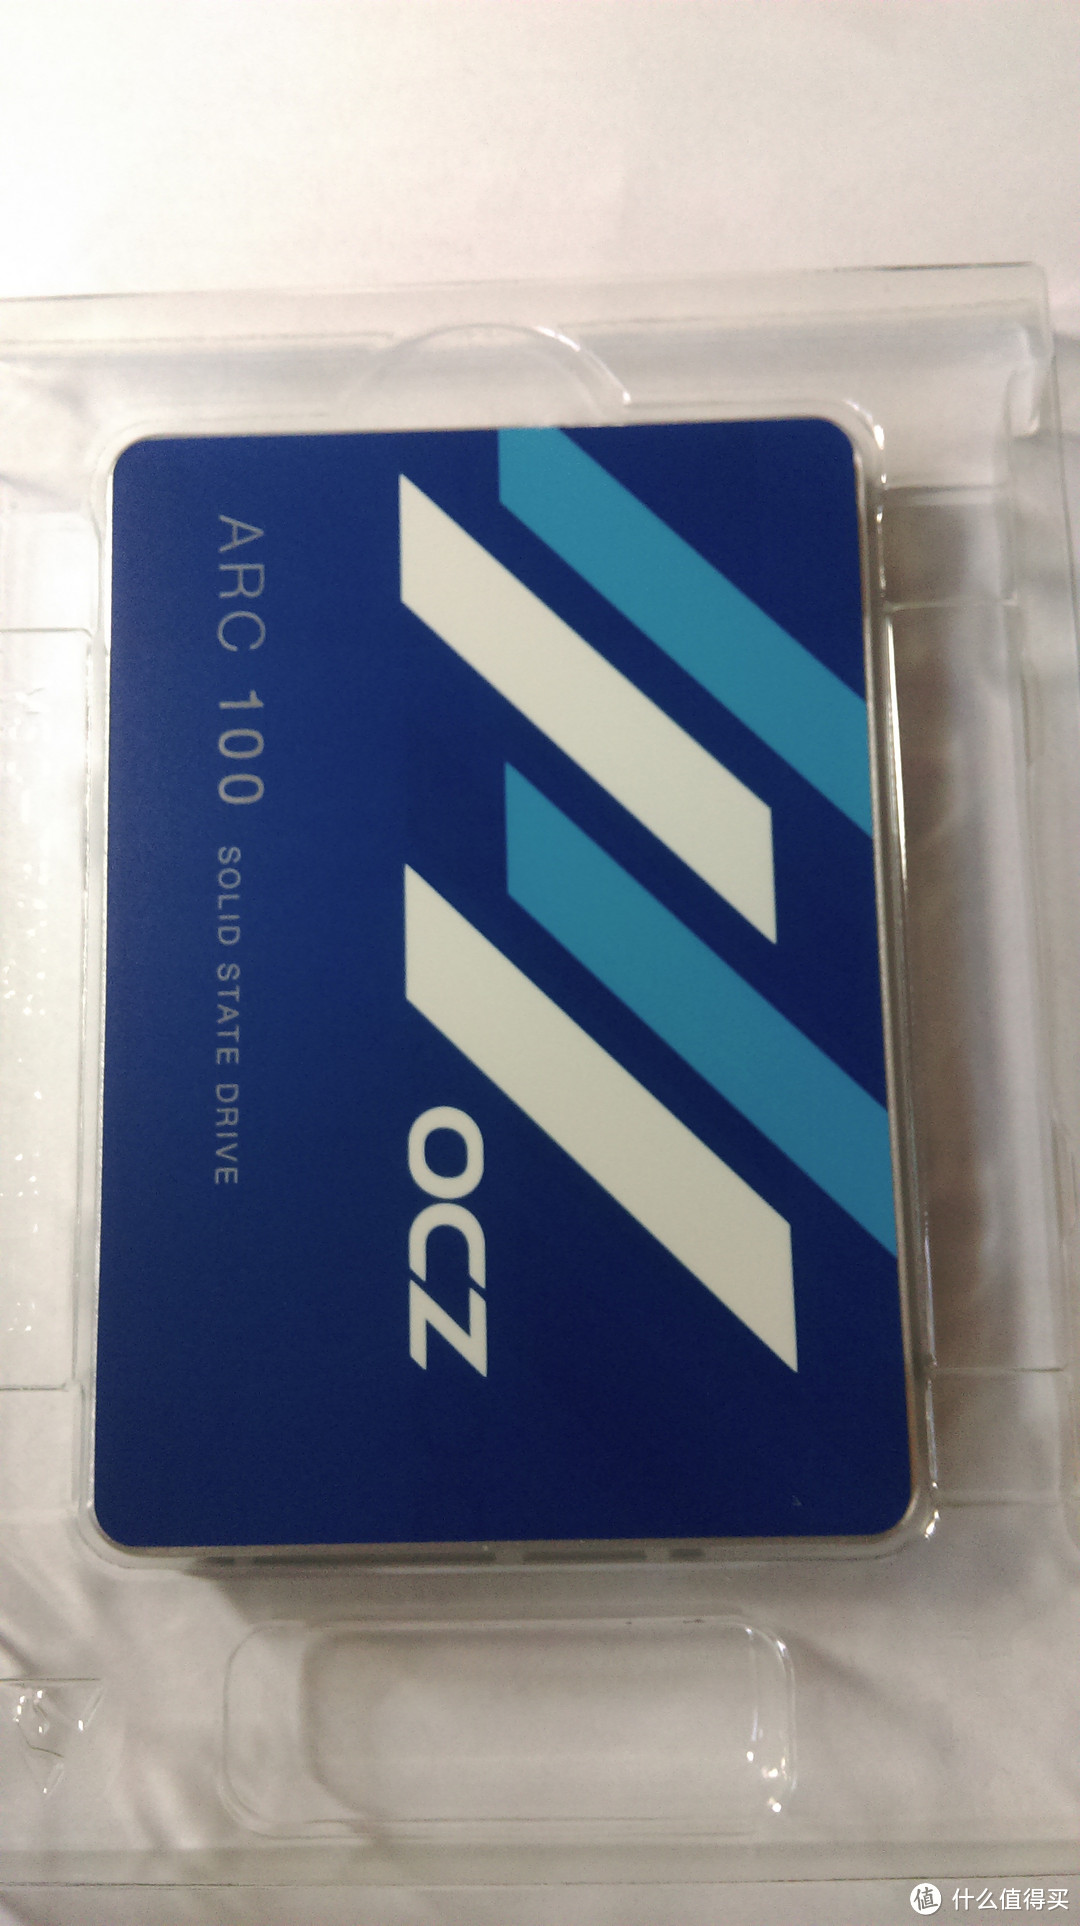 让小Y再次彪悍起来！Y470P升级OCZ ARC100苍穹系列 240G 2.5英寸 SSD固态硬盘